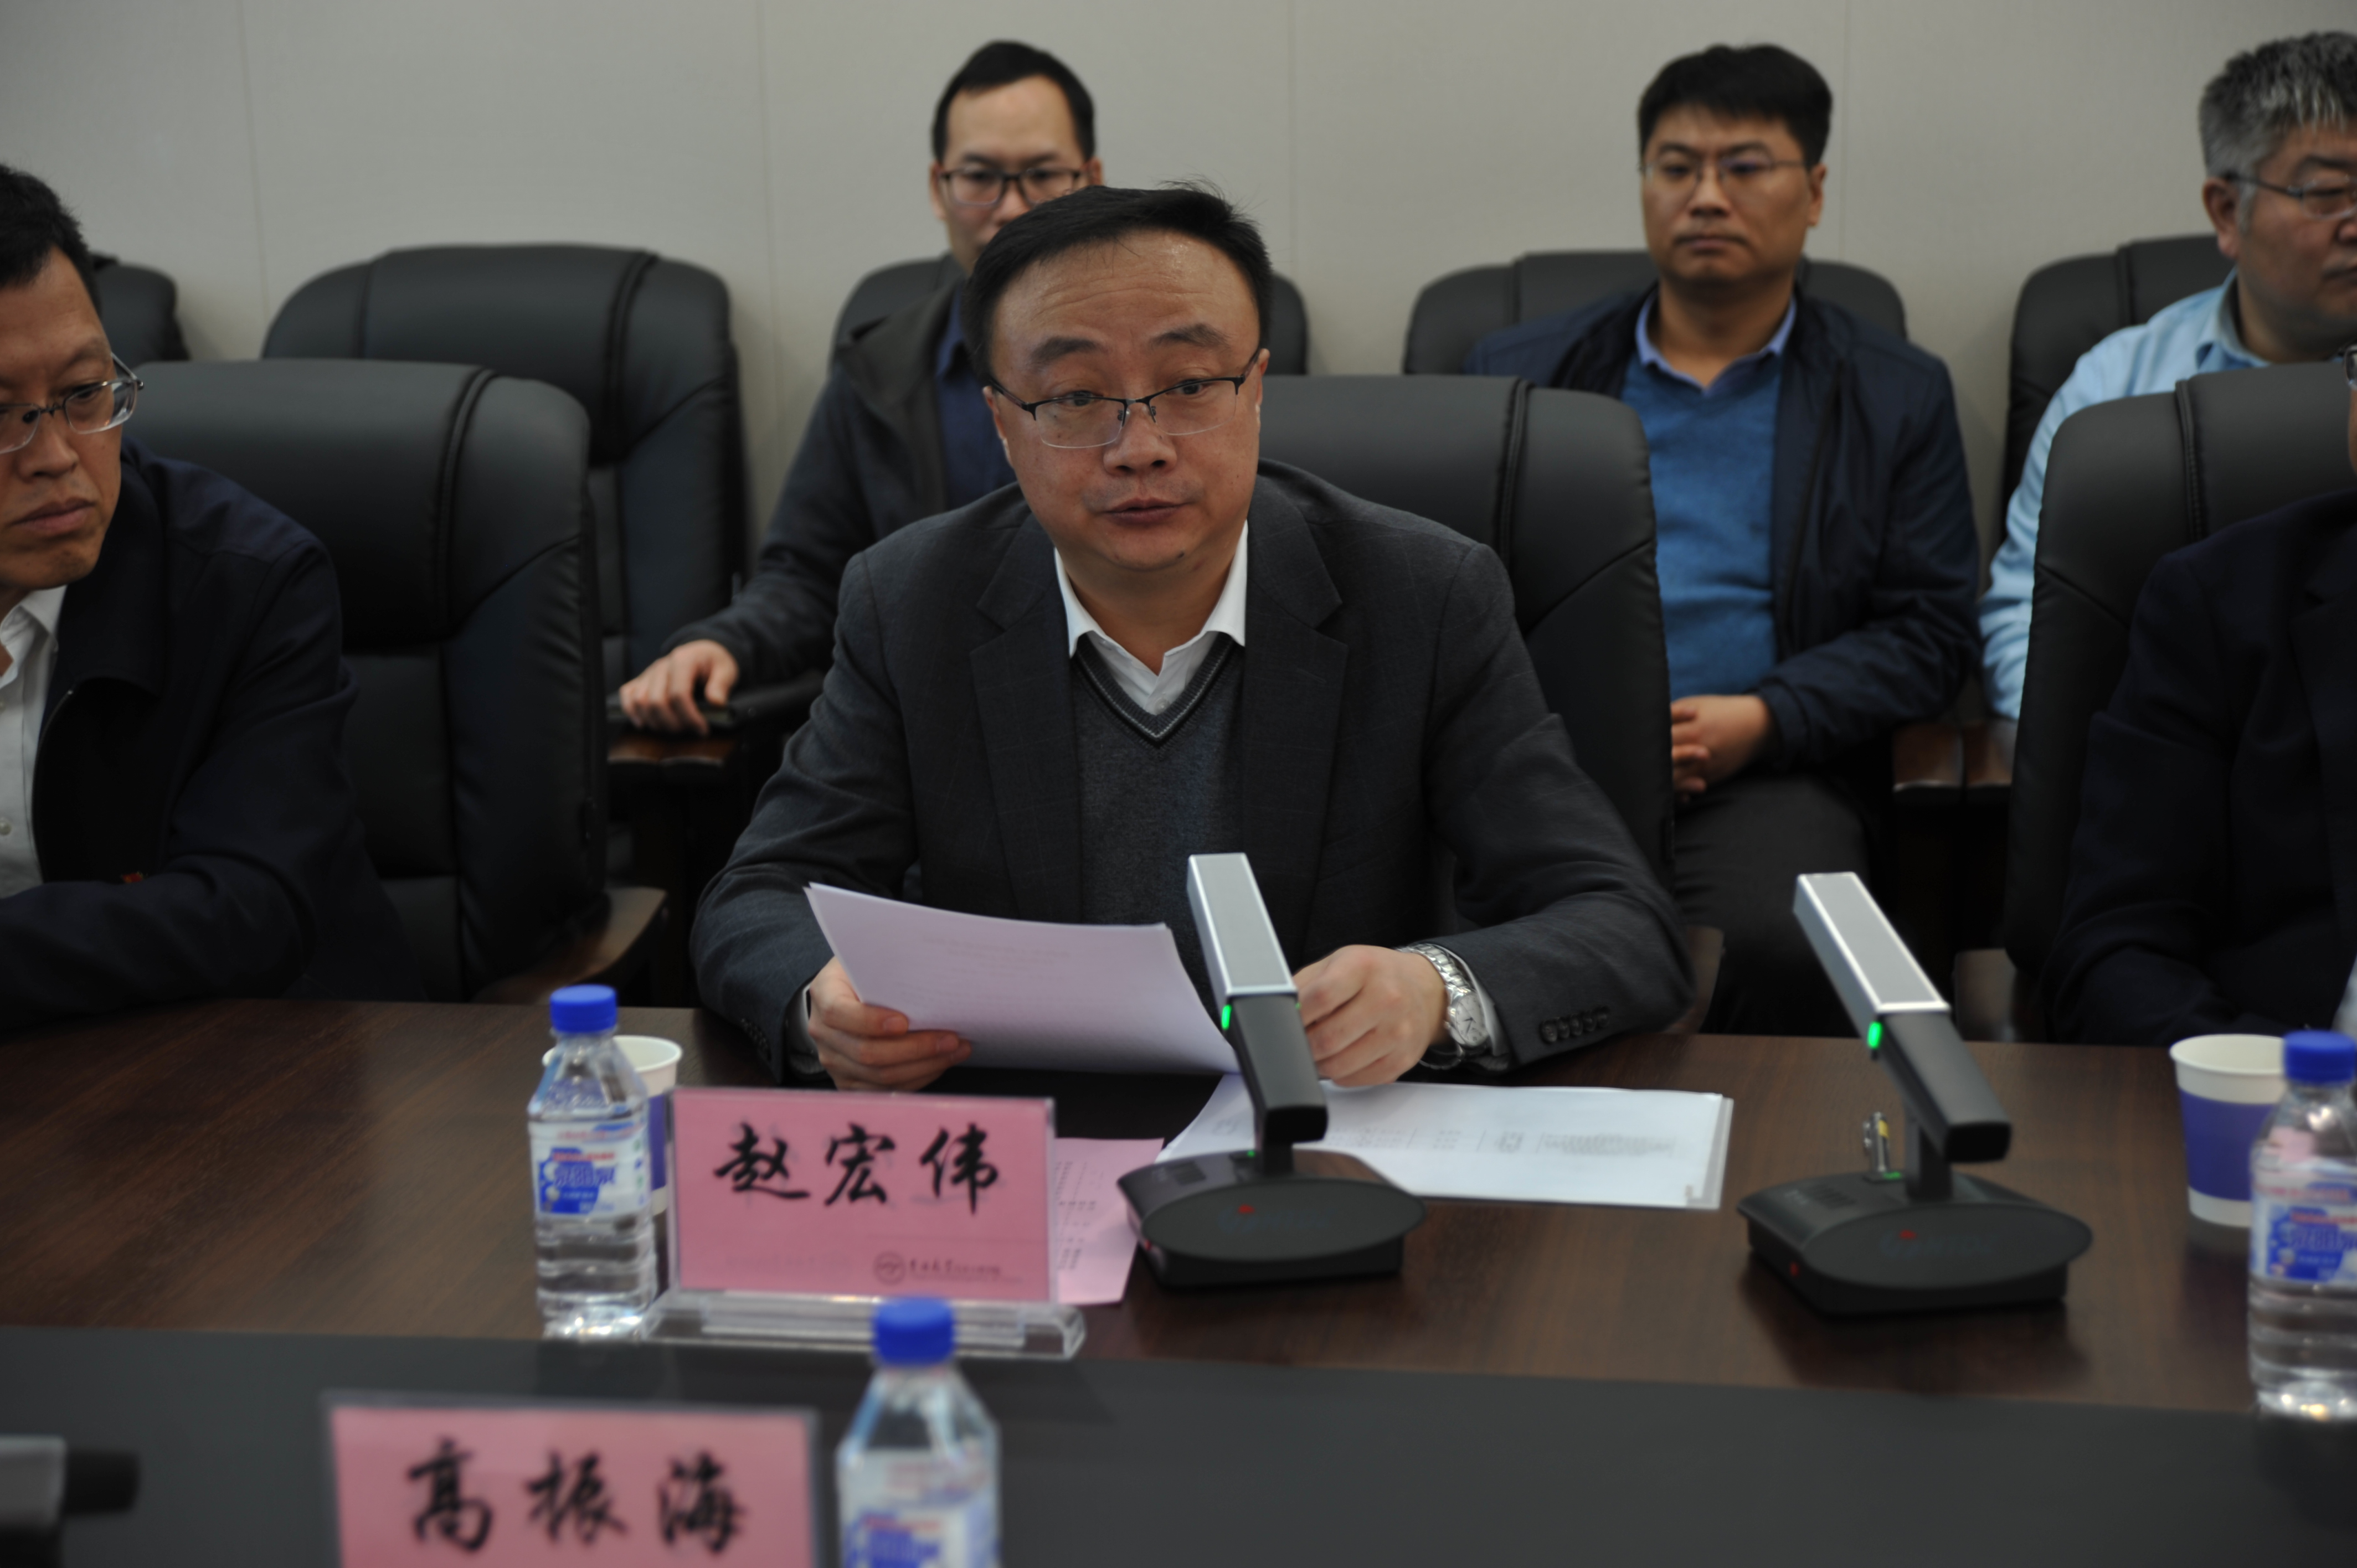 学校党委常委,副校长赵宏伟同志作了重要讲话,他表示学校党委始终高度